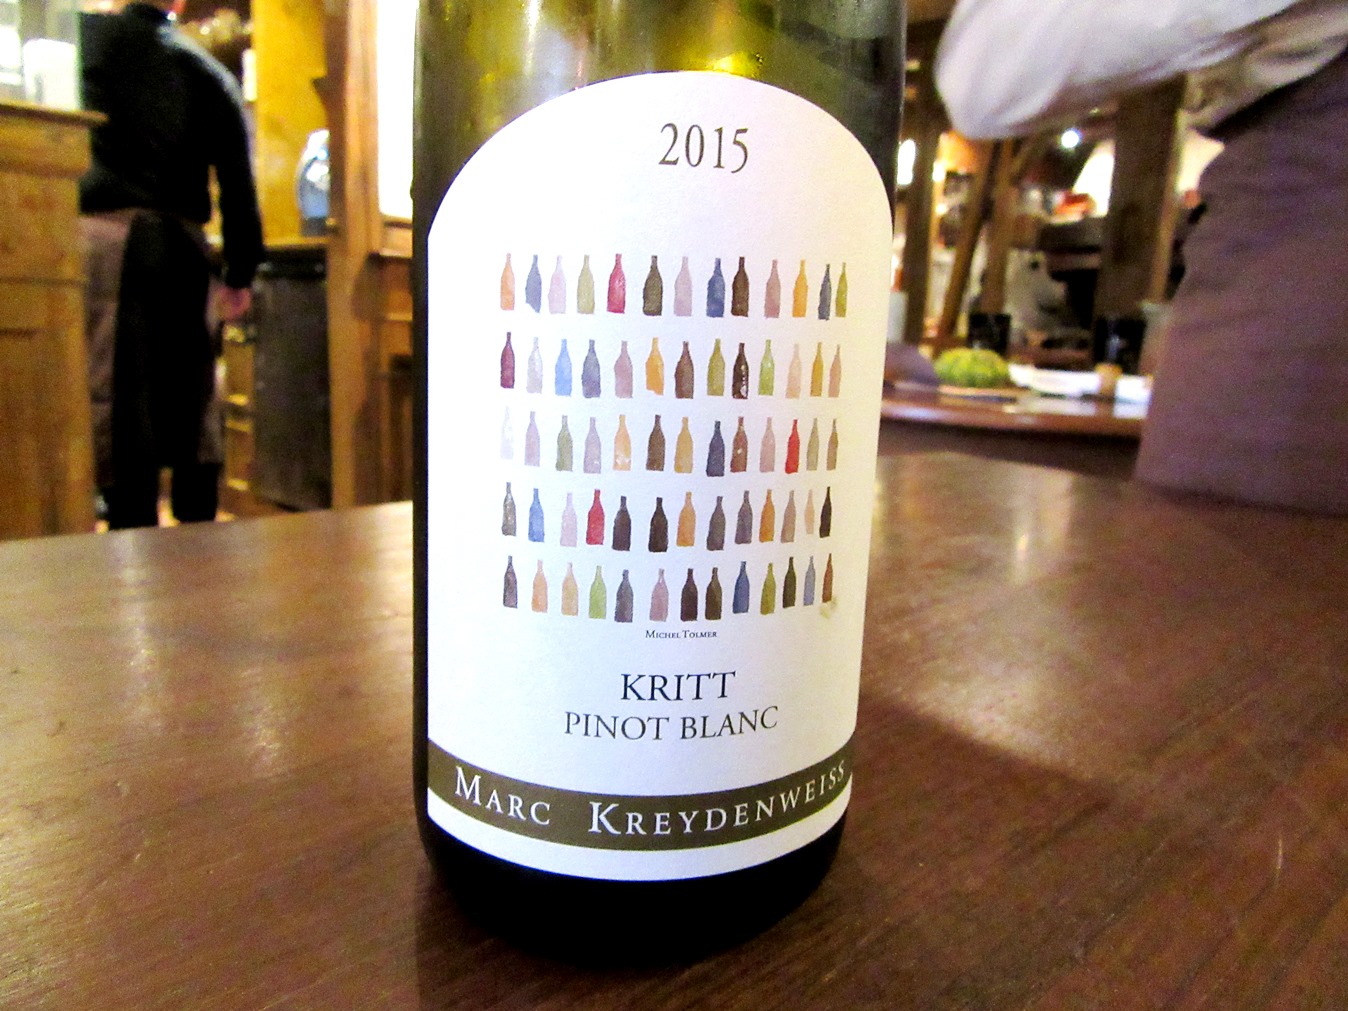 Marc Kreydenweiss, Kritt Pinot Blanc 2015, Alsace, France, Wine Casual